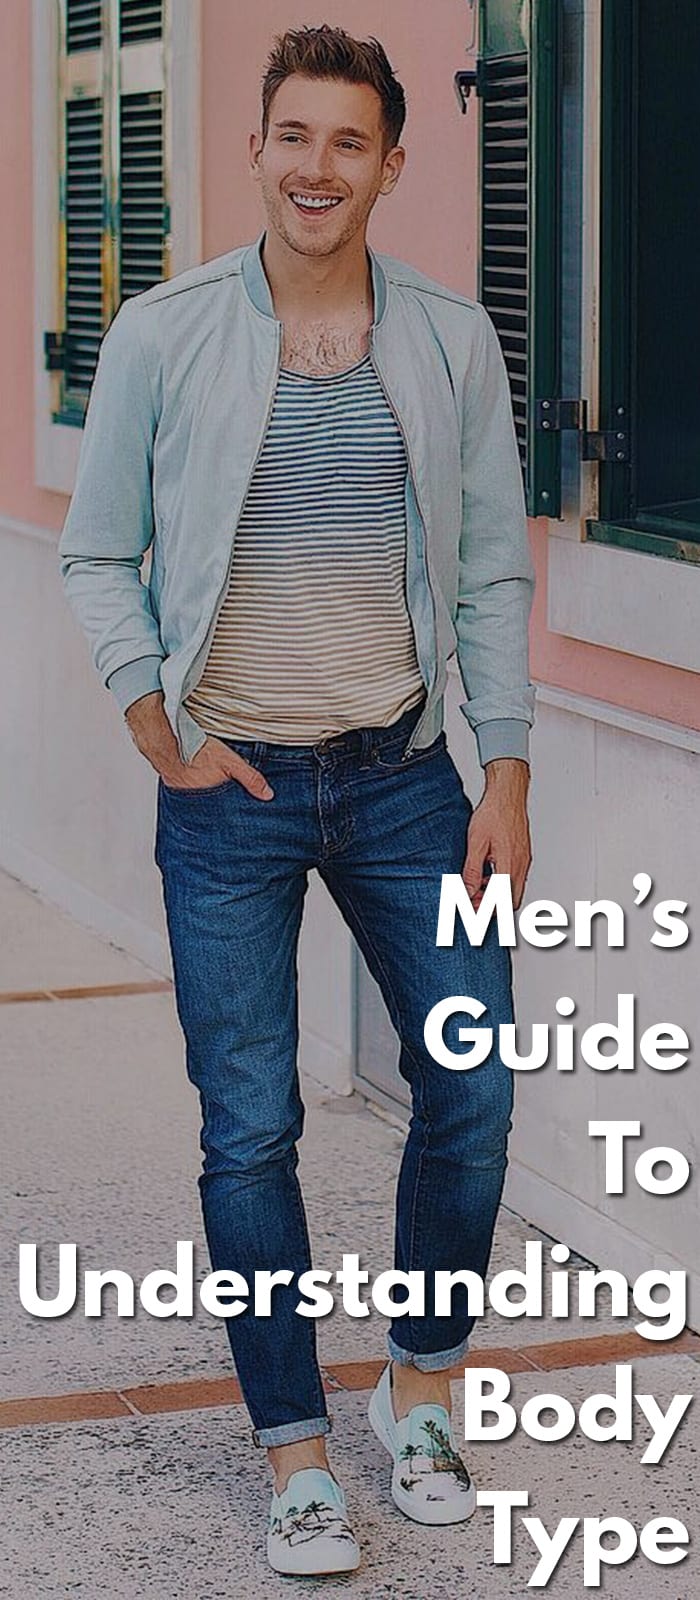 Men’s-Guide-To-Understanding-Body-Type.